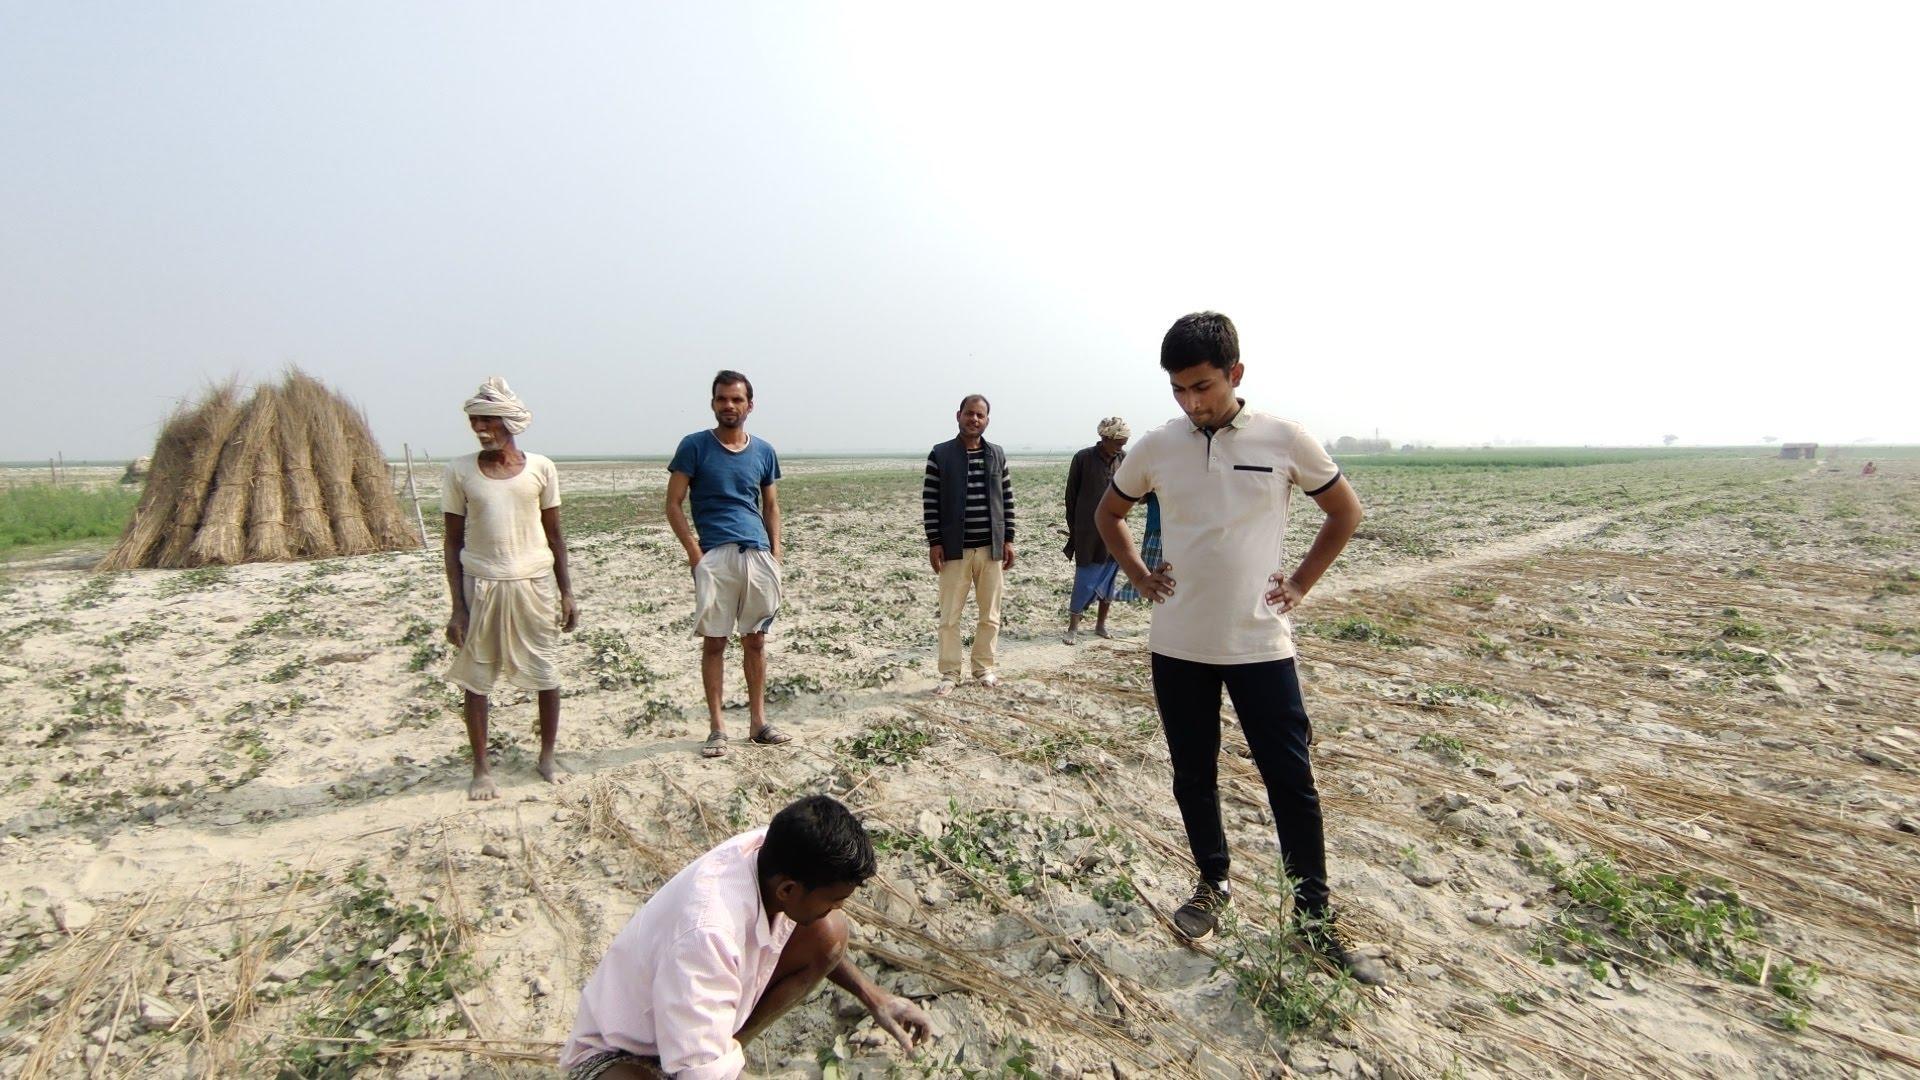 写真）インド国内の干ばつの影響がひどい農村において、農家へのヒアリングをおこなっているところ。